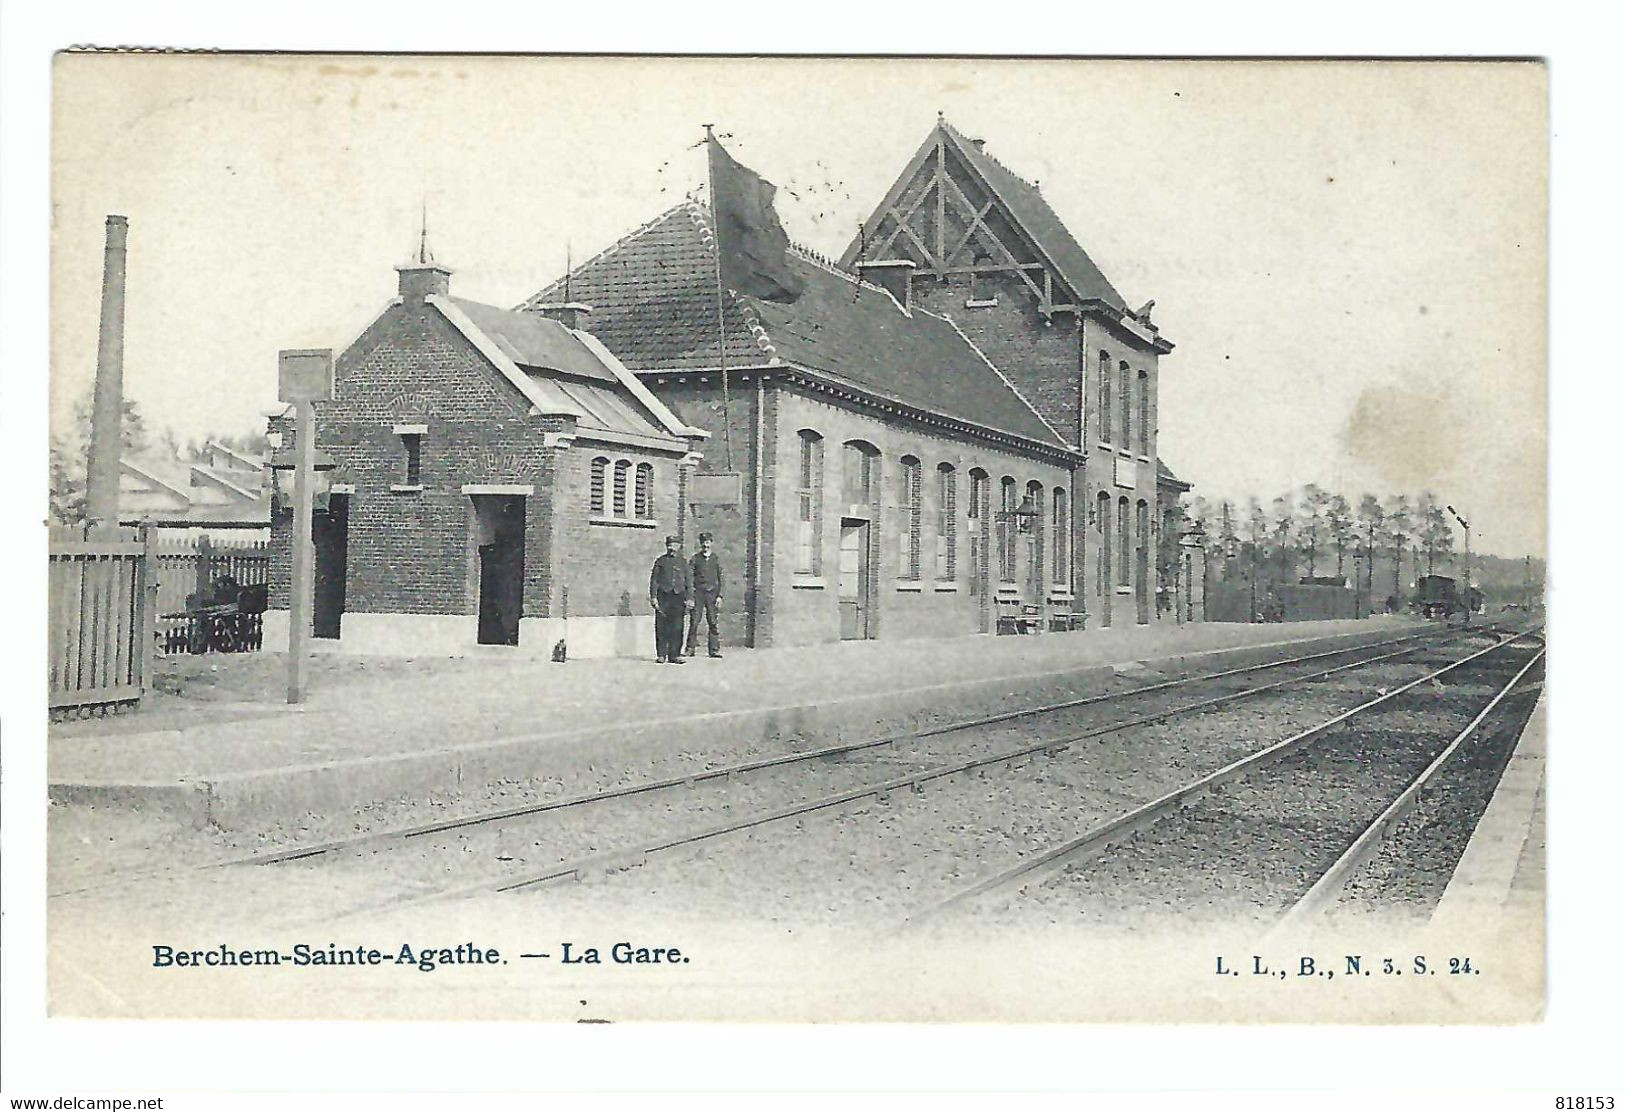 Berchem-Sainte-Agathe  -  La Gare  1908 - Berchem-Ste-Agathe - St-Agatha-Berchem